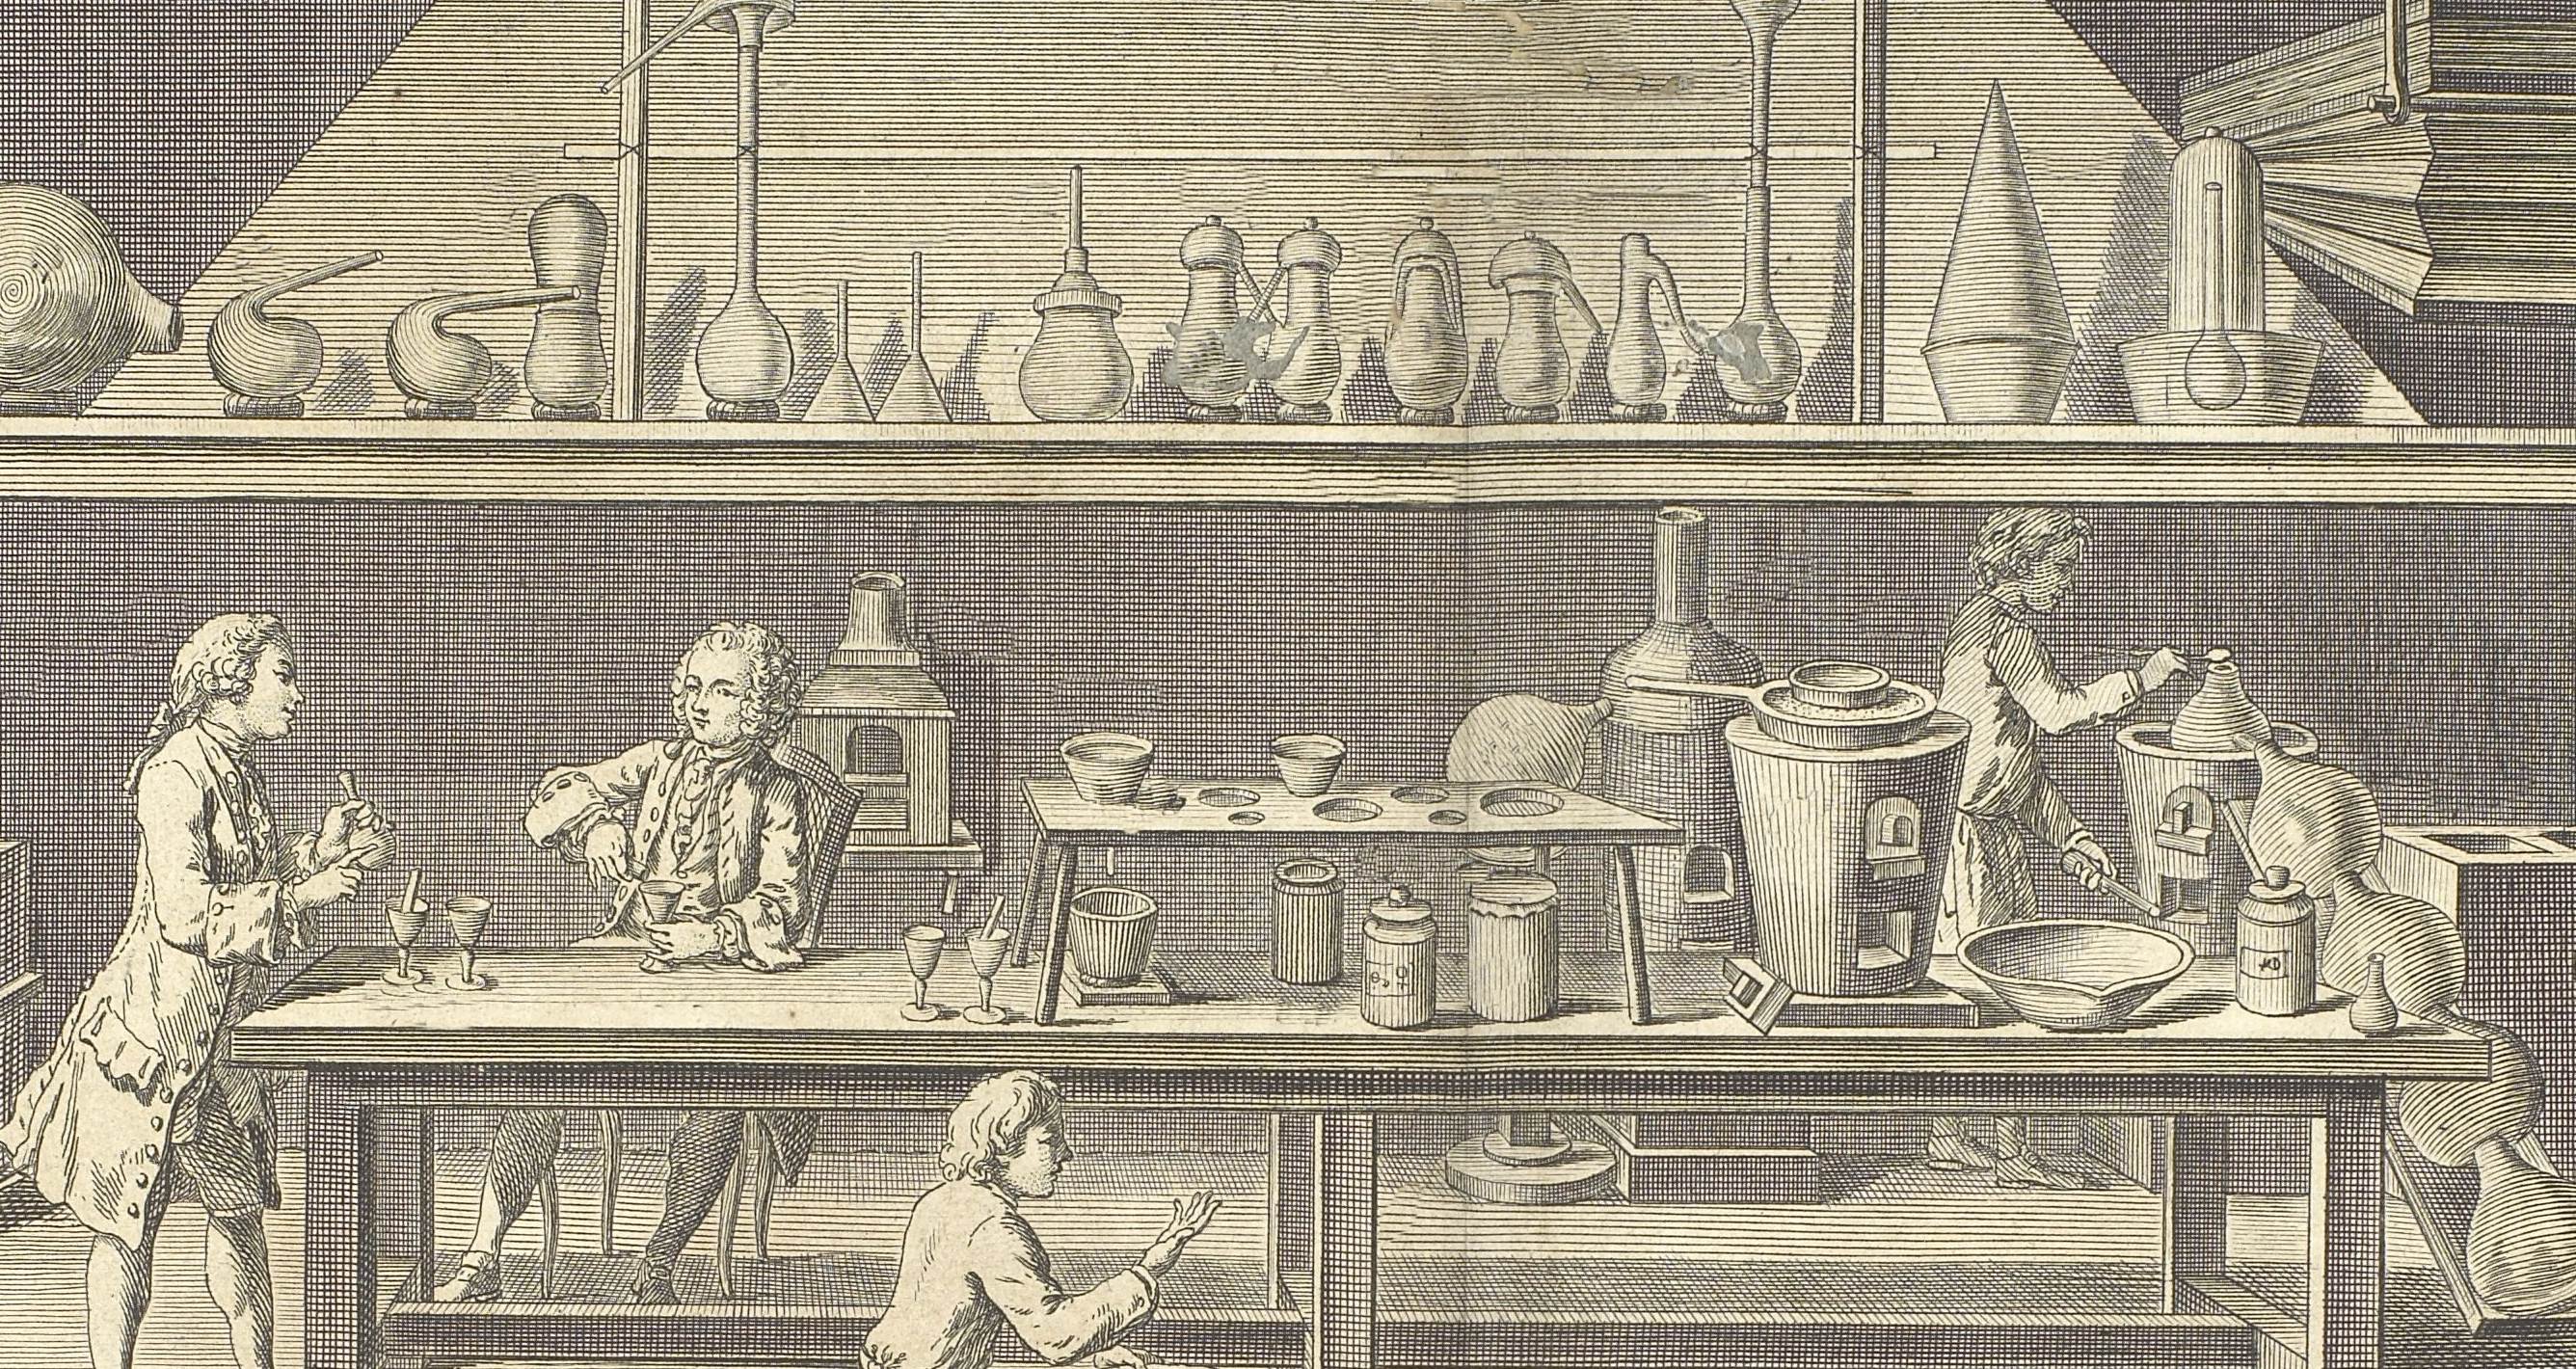 Laboratório de química e seus equipamentos, em prancha incluída na Enciclopédia iluminista de Diderot e d’Alembert, publicada em Paris, de 1751 a 1772 [detalhe]